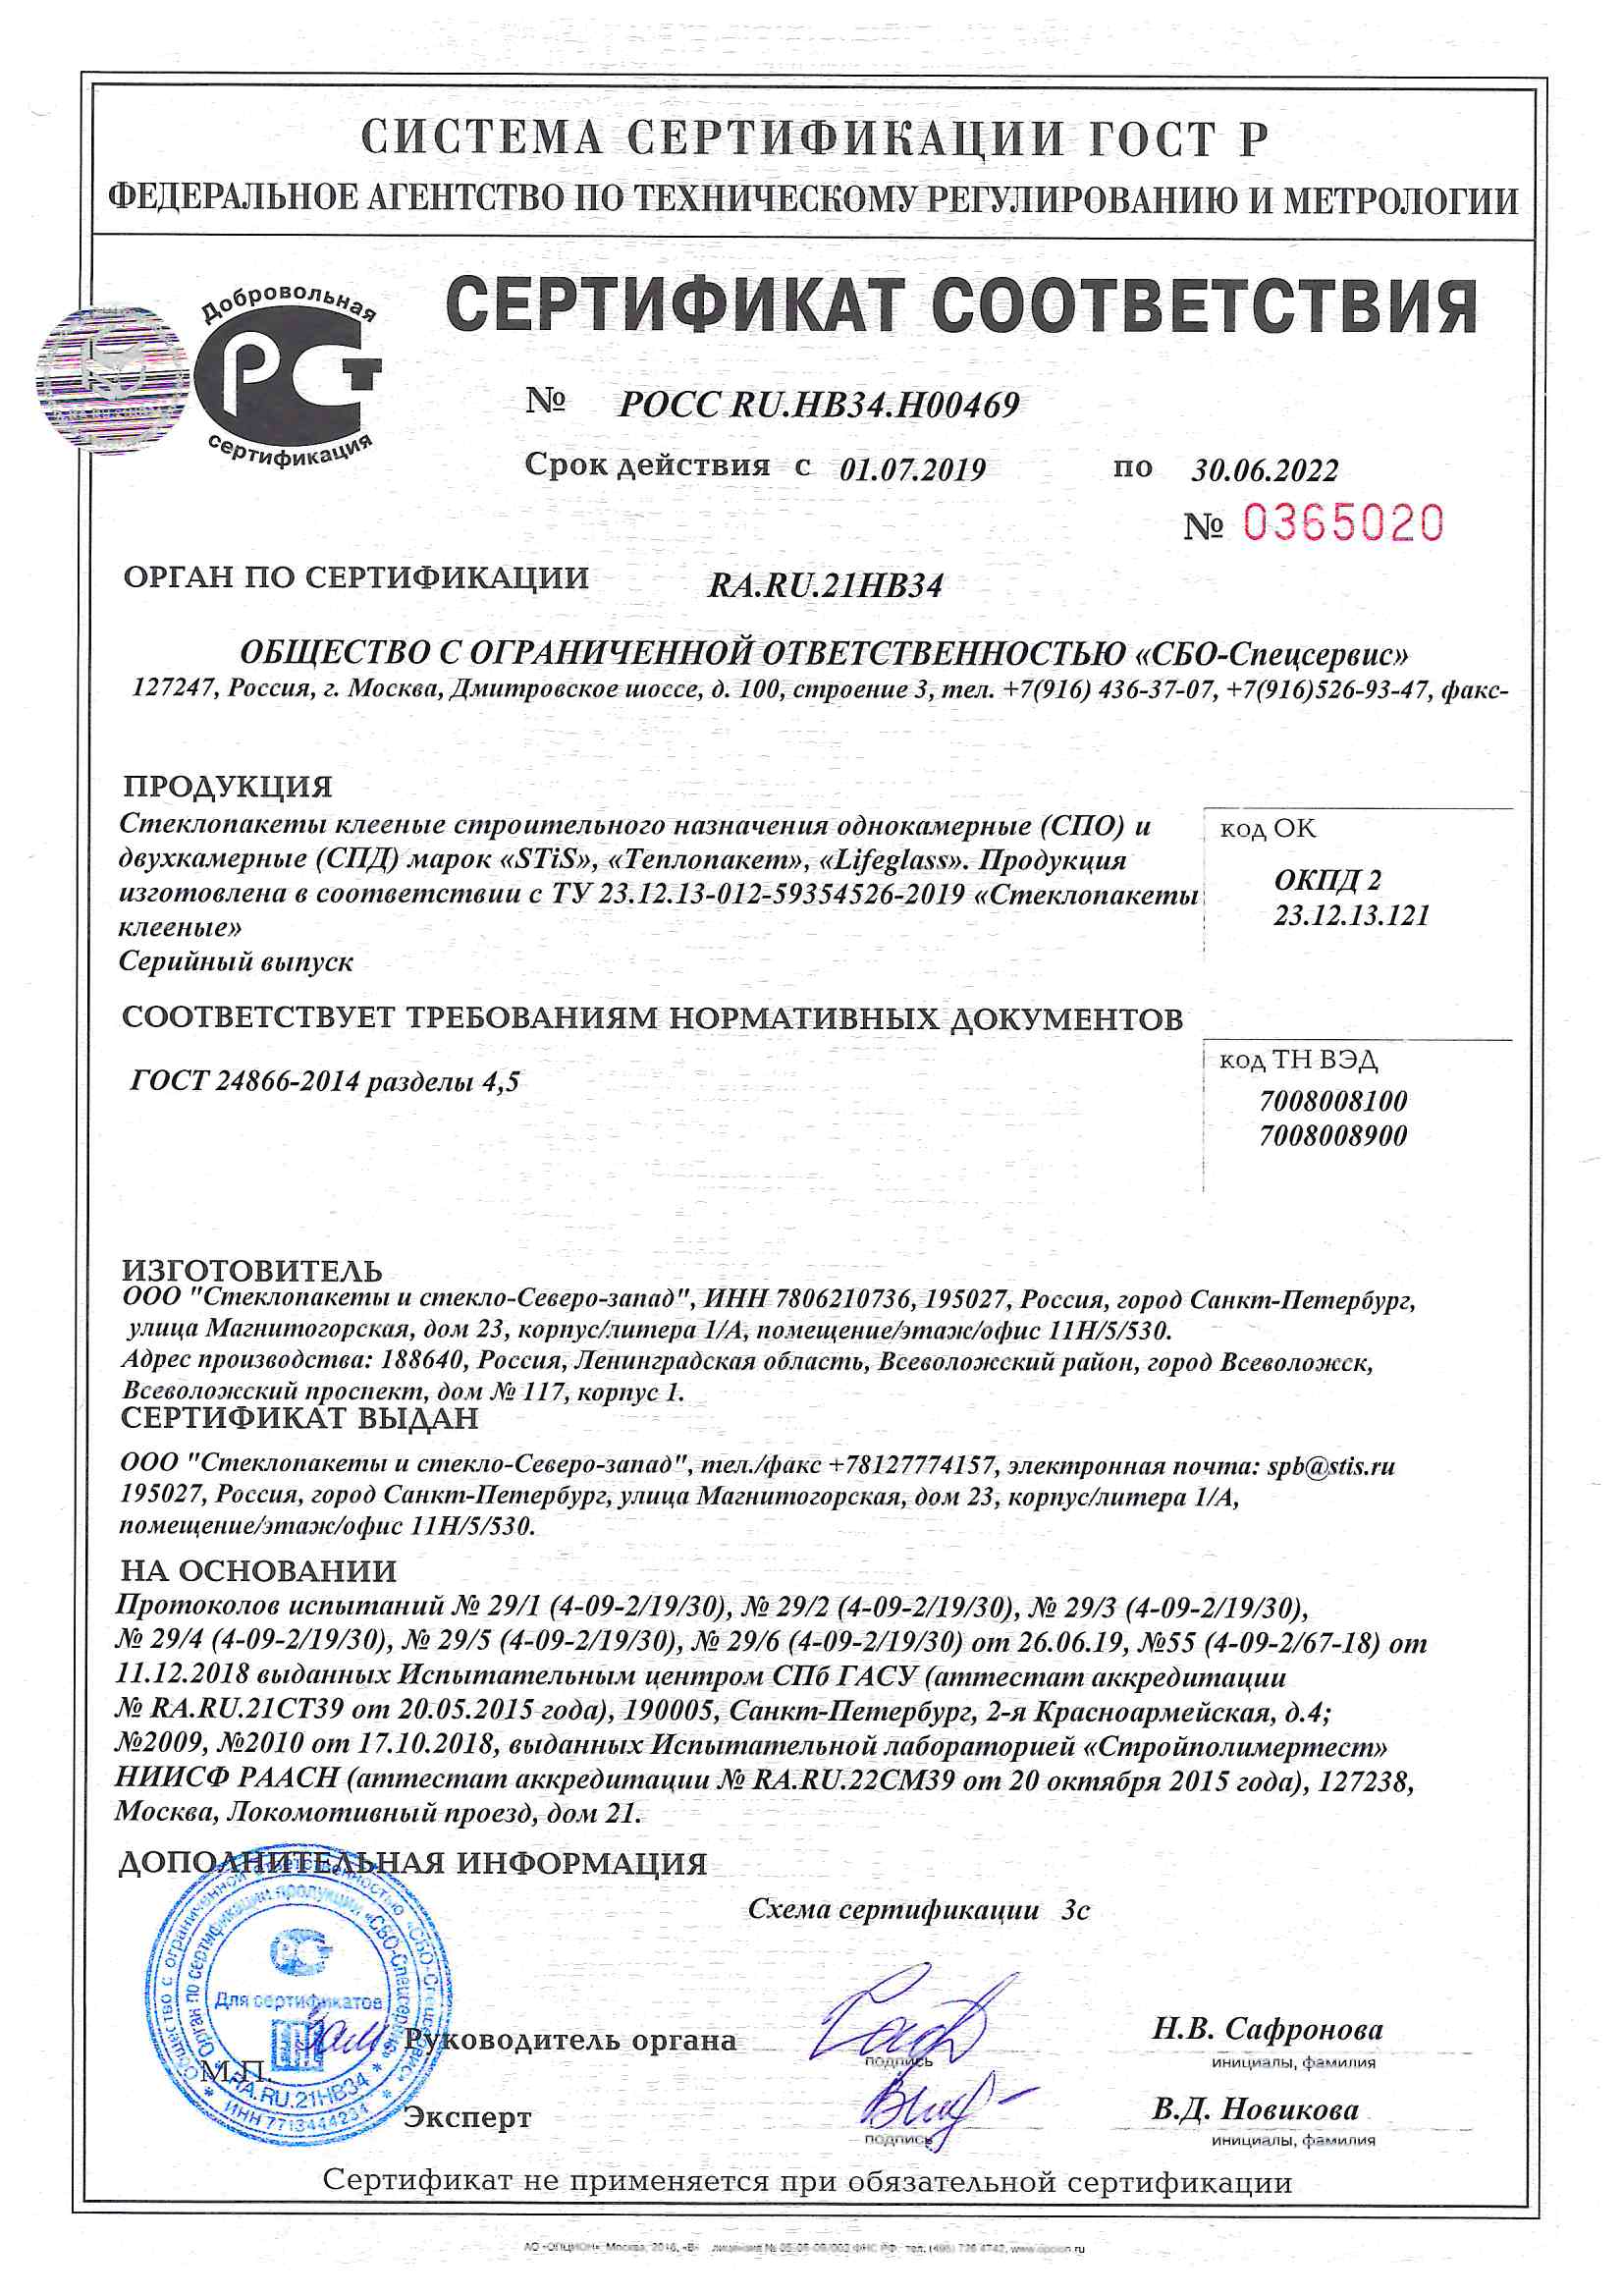 Сертификат СтиС-СПб